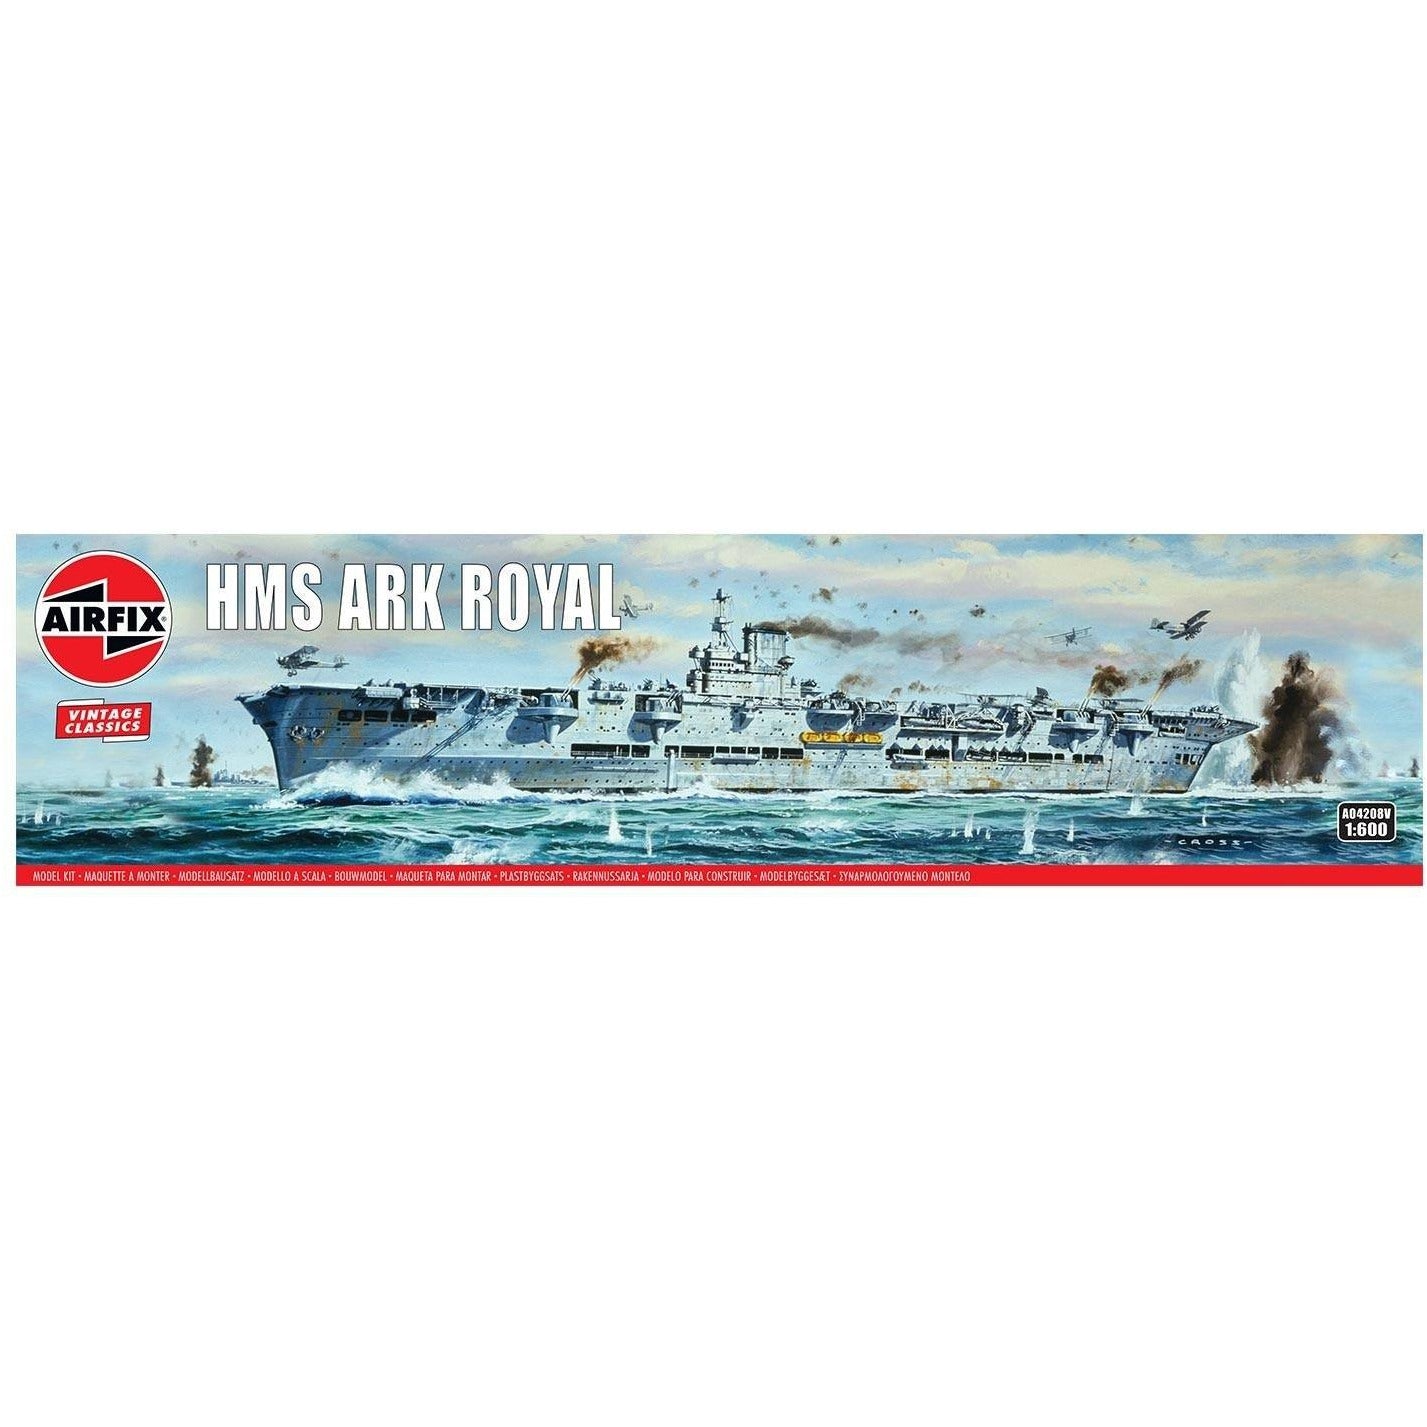 HMS Ark Royal 1/600 Model Ship Kit #4208 by Airfix